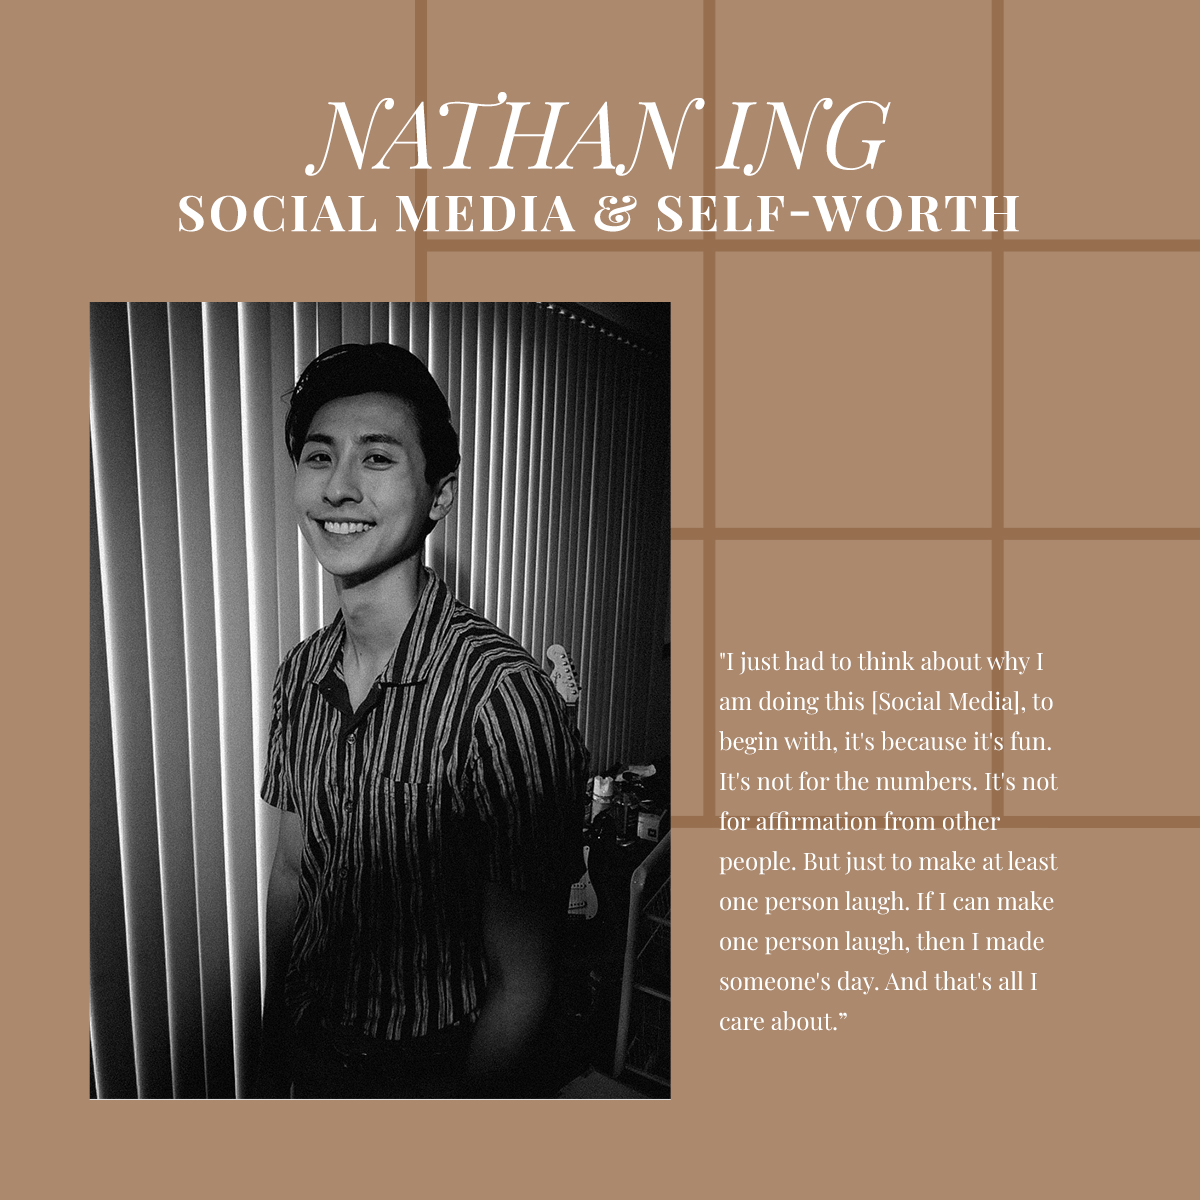 Nathan Ing Wong Fu GenZ Magazine